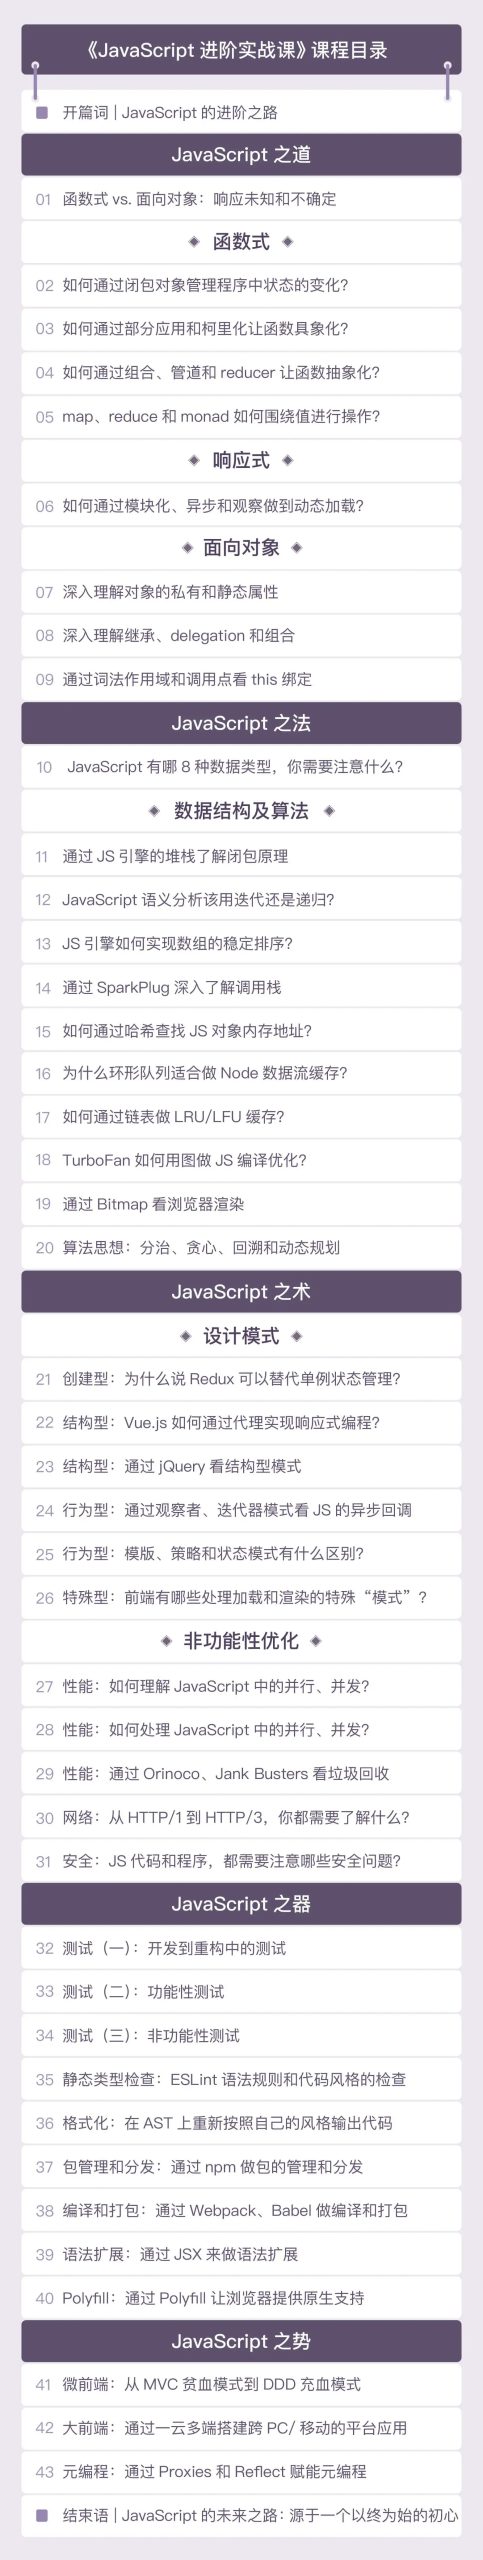 最新javascript教程-JavaScript进阶实战课完整版